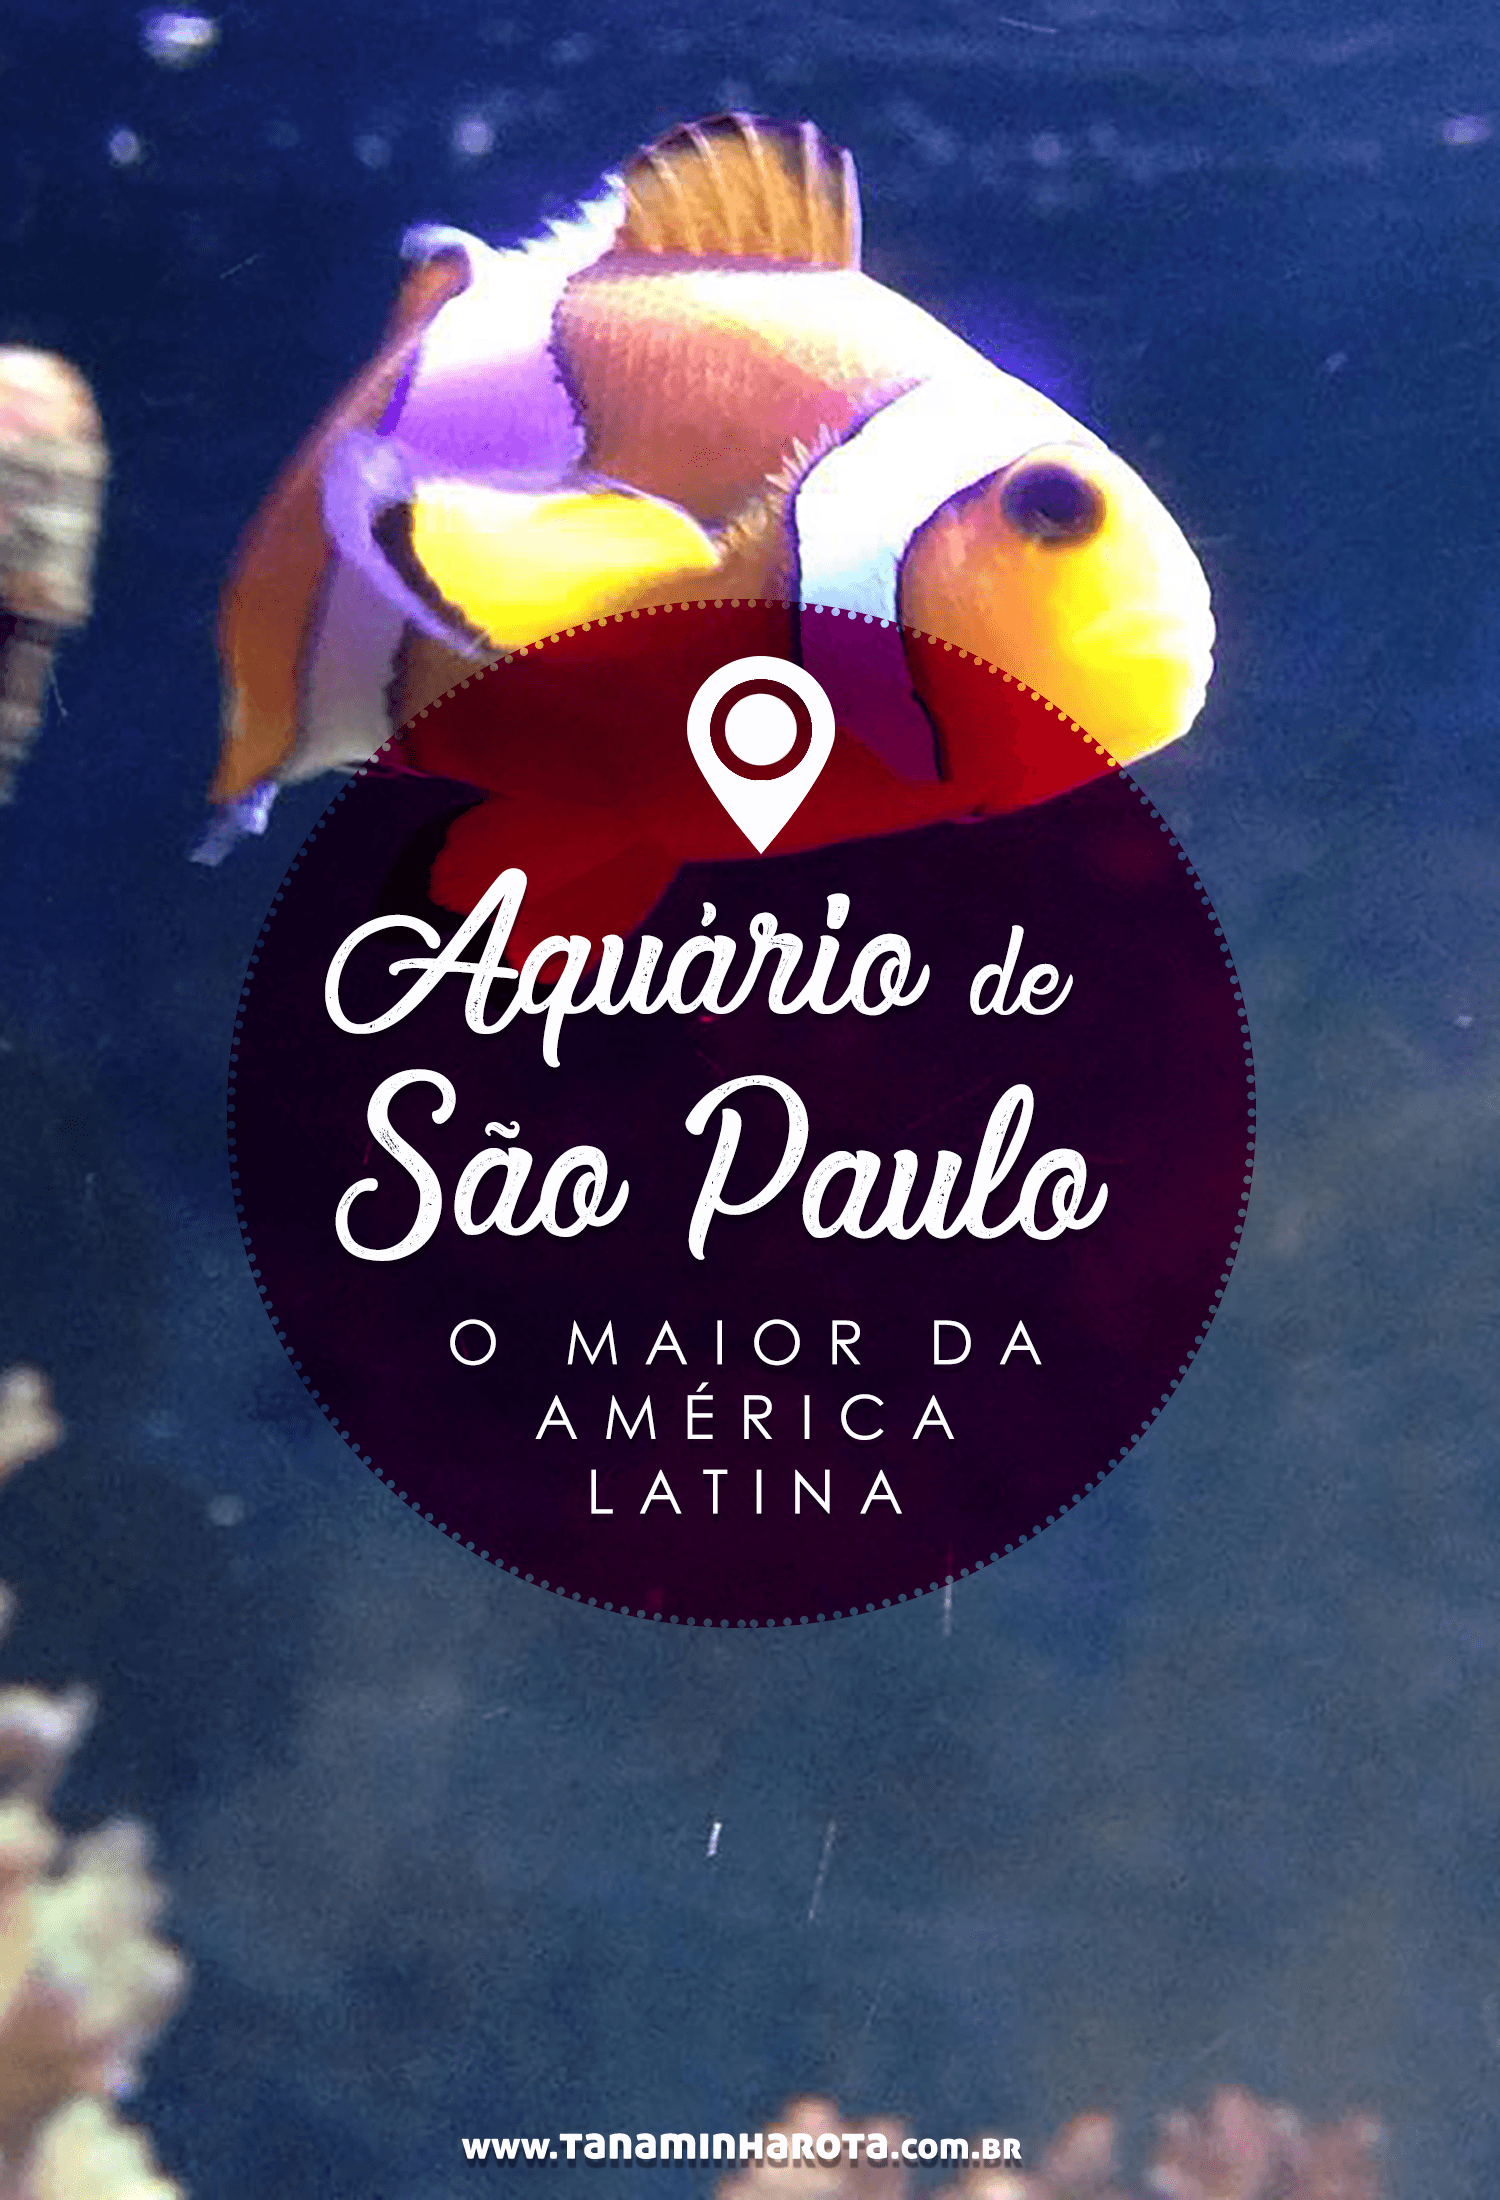 Conheça o Aquário de São Paulo, a maior atração do tipo na América Latina! Com vários ambientes e até urso polar, esse é um passeio imperdível!